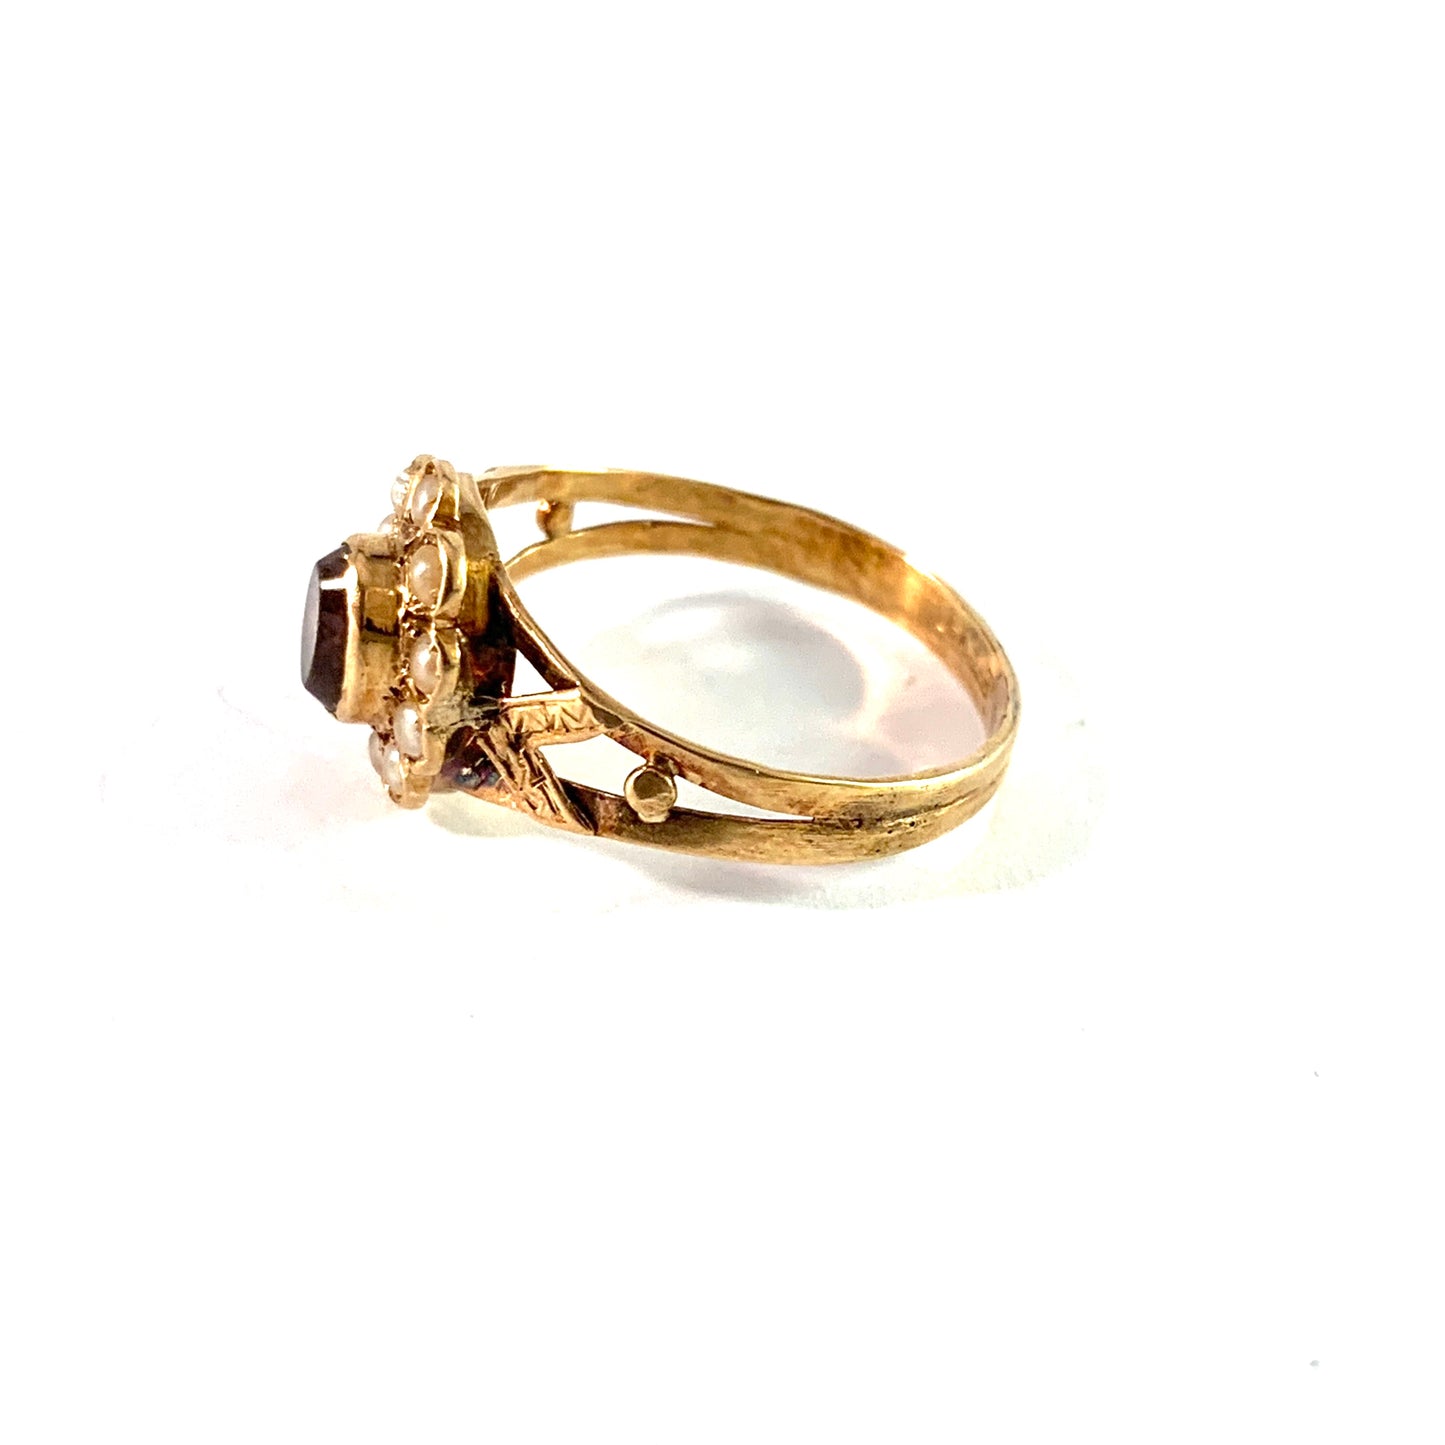 G Dahlgren, Sweden 1930s. 18k Gold Amethyst Seed Pearl Ring.